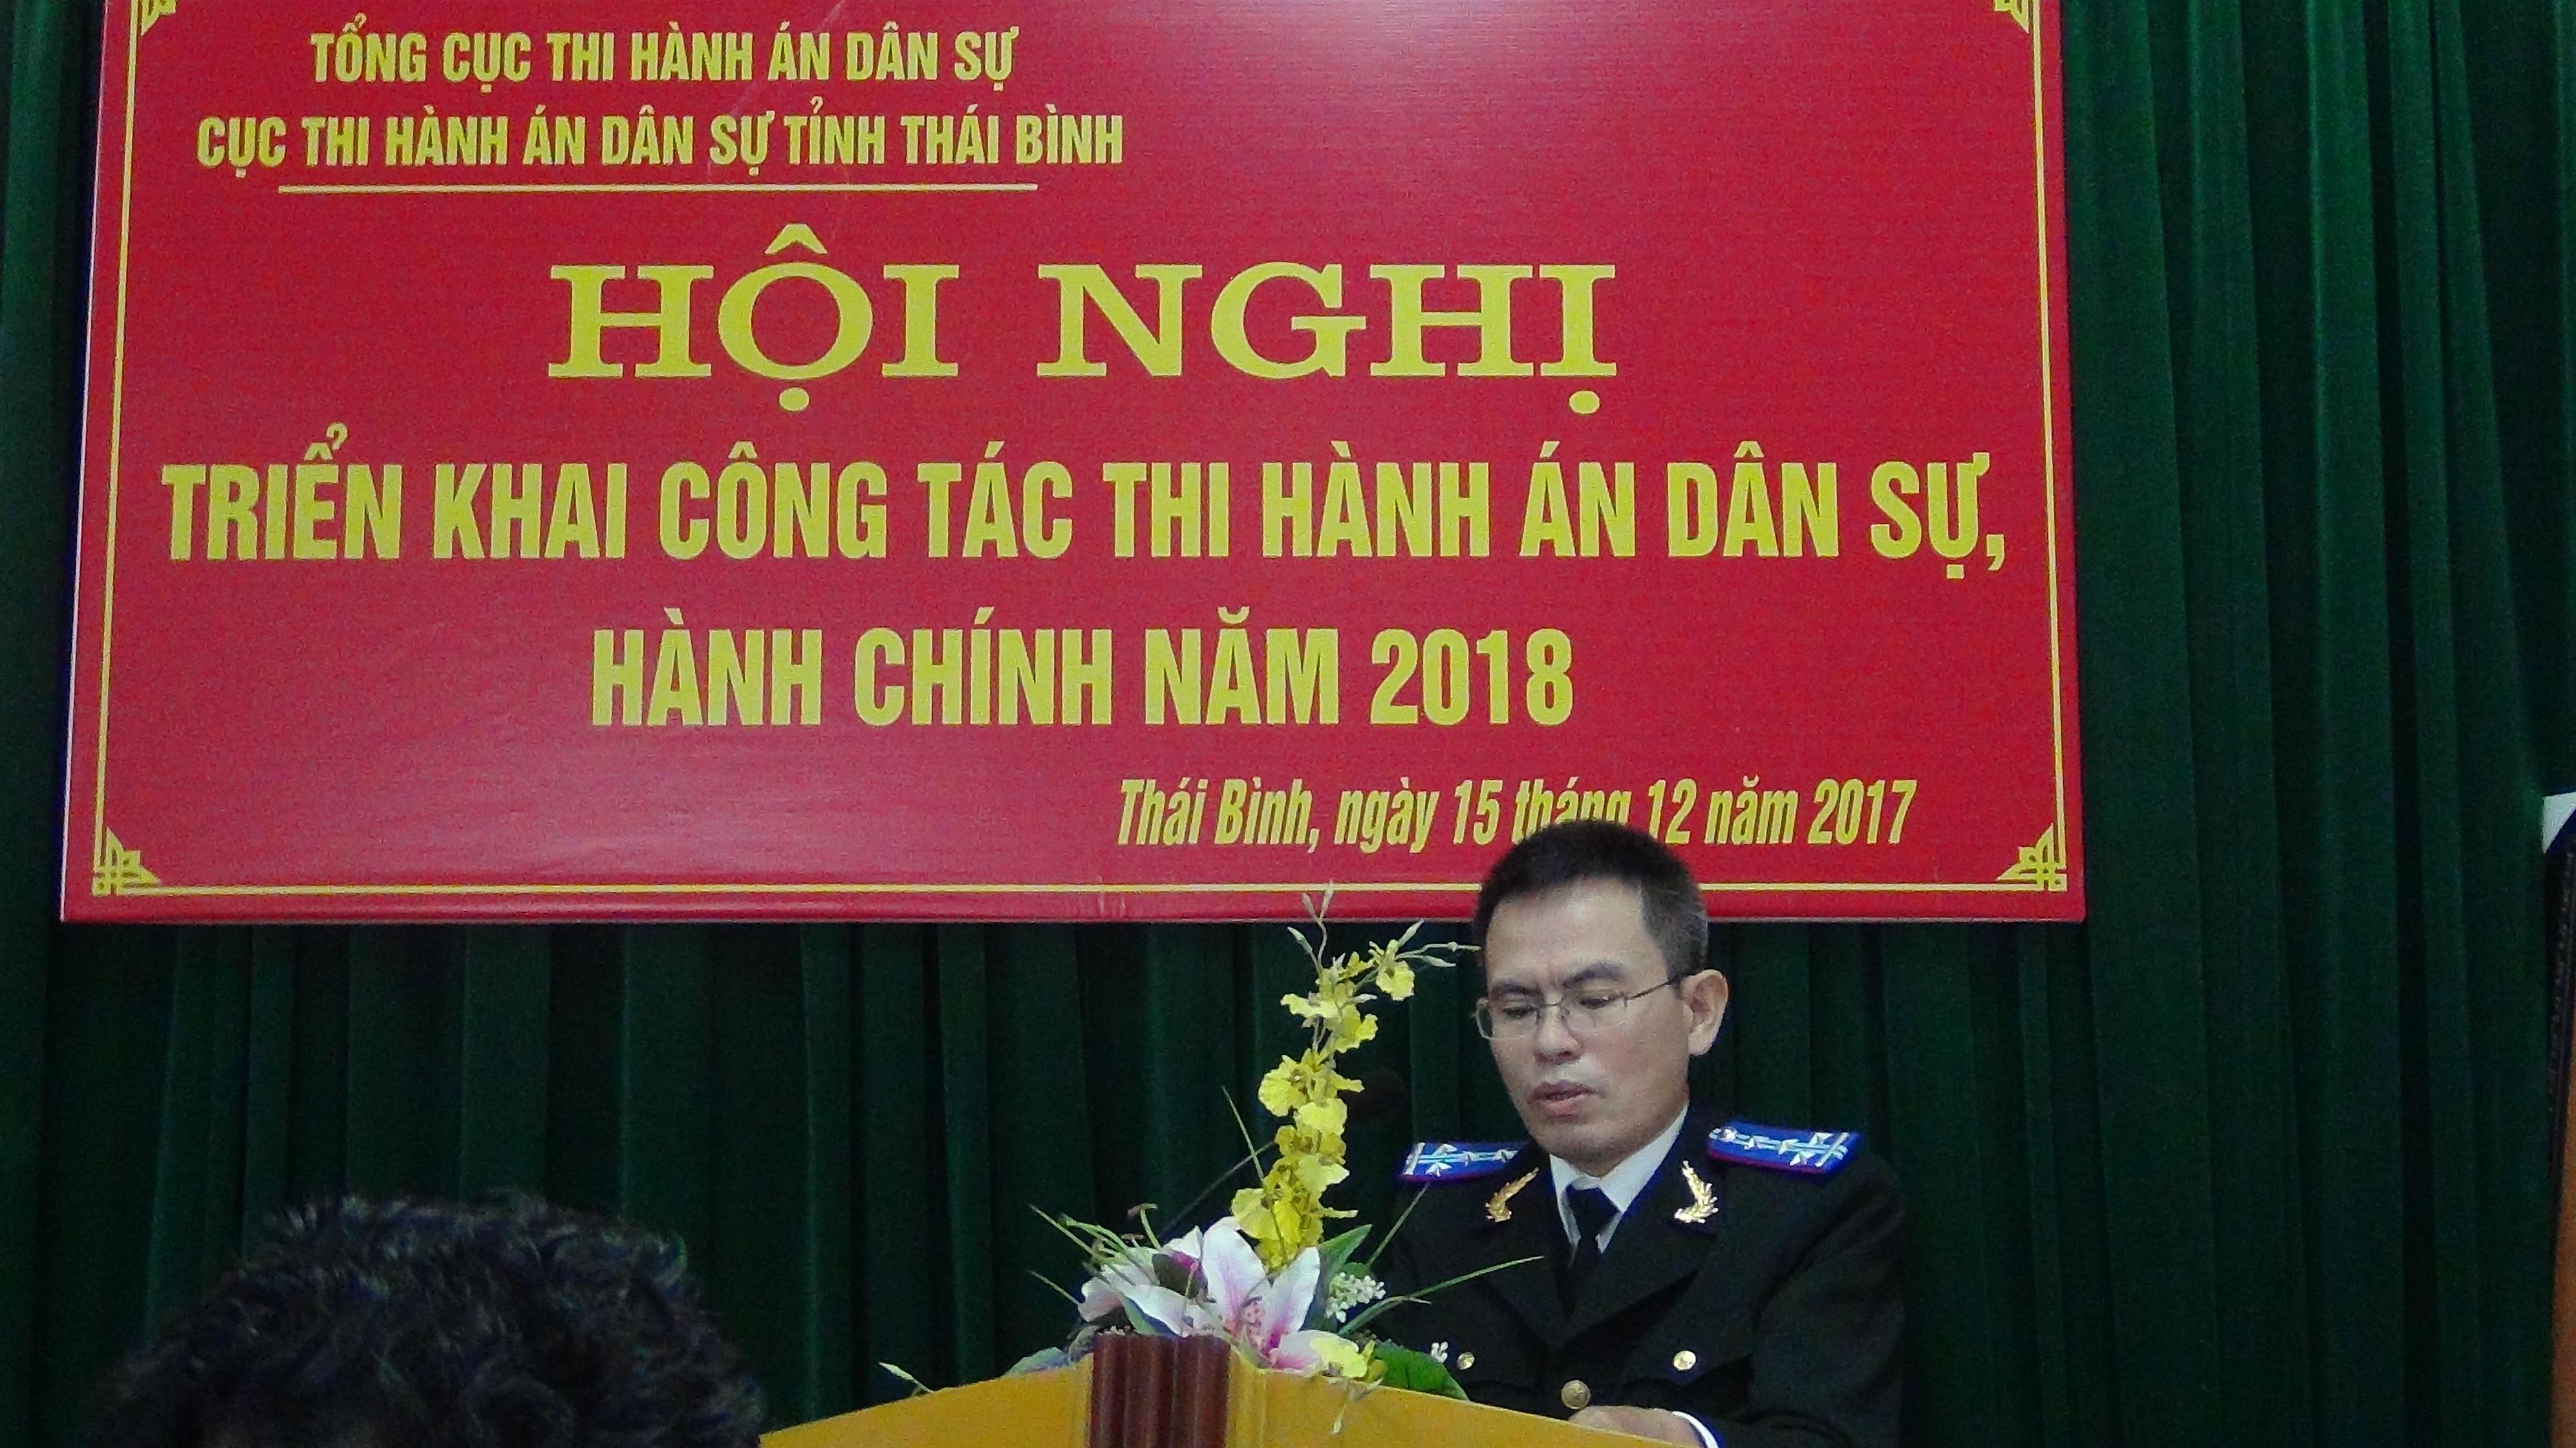 Cục Thi hành án dân sự tỉnh Thái Bình tổ chức Hội nghị triển khai công tác thi hành án dân sự năm 2018